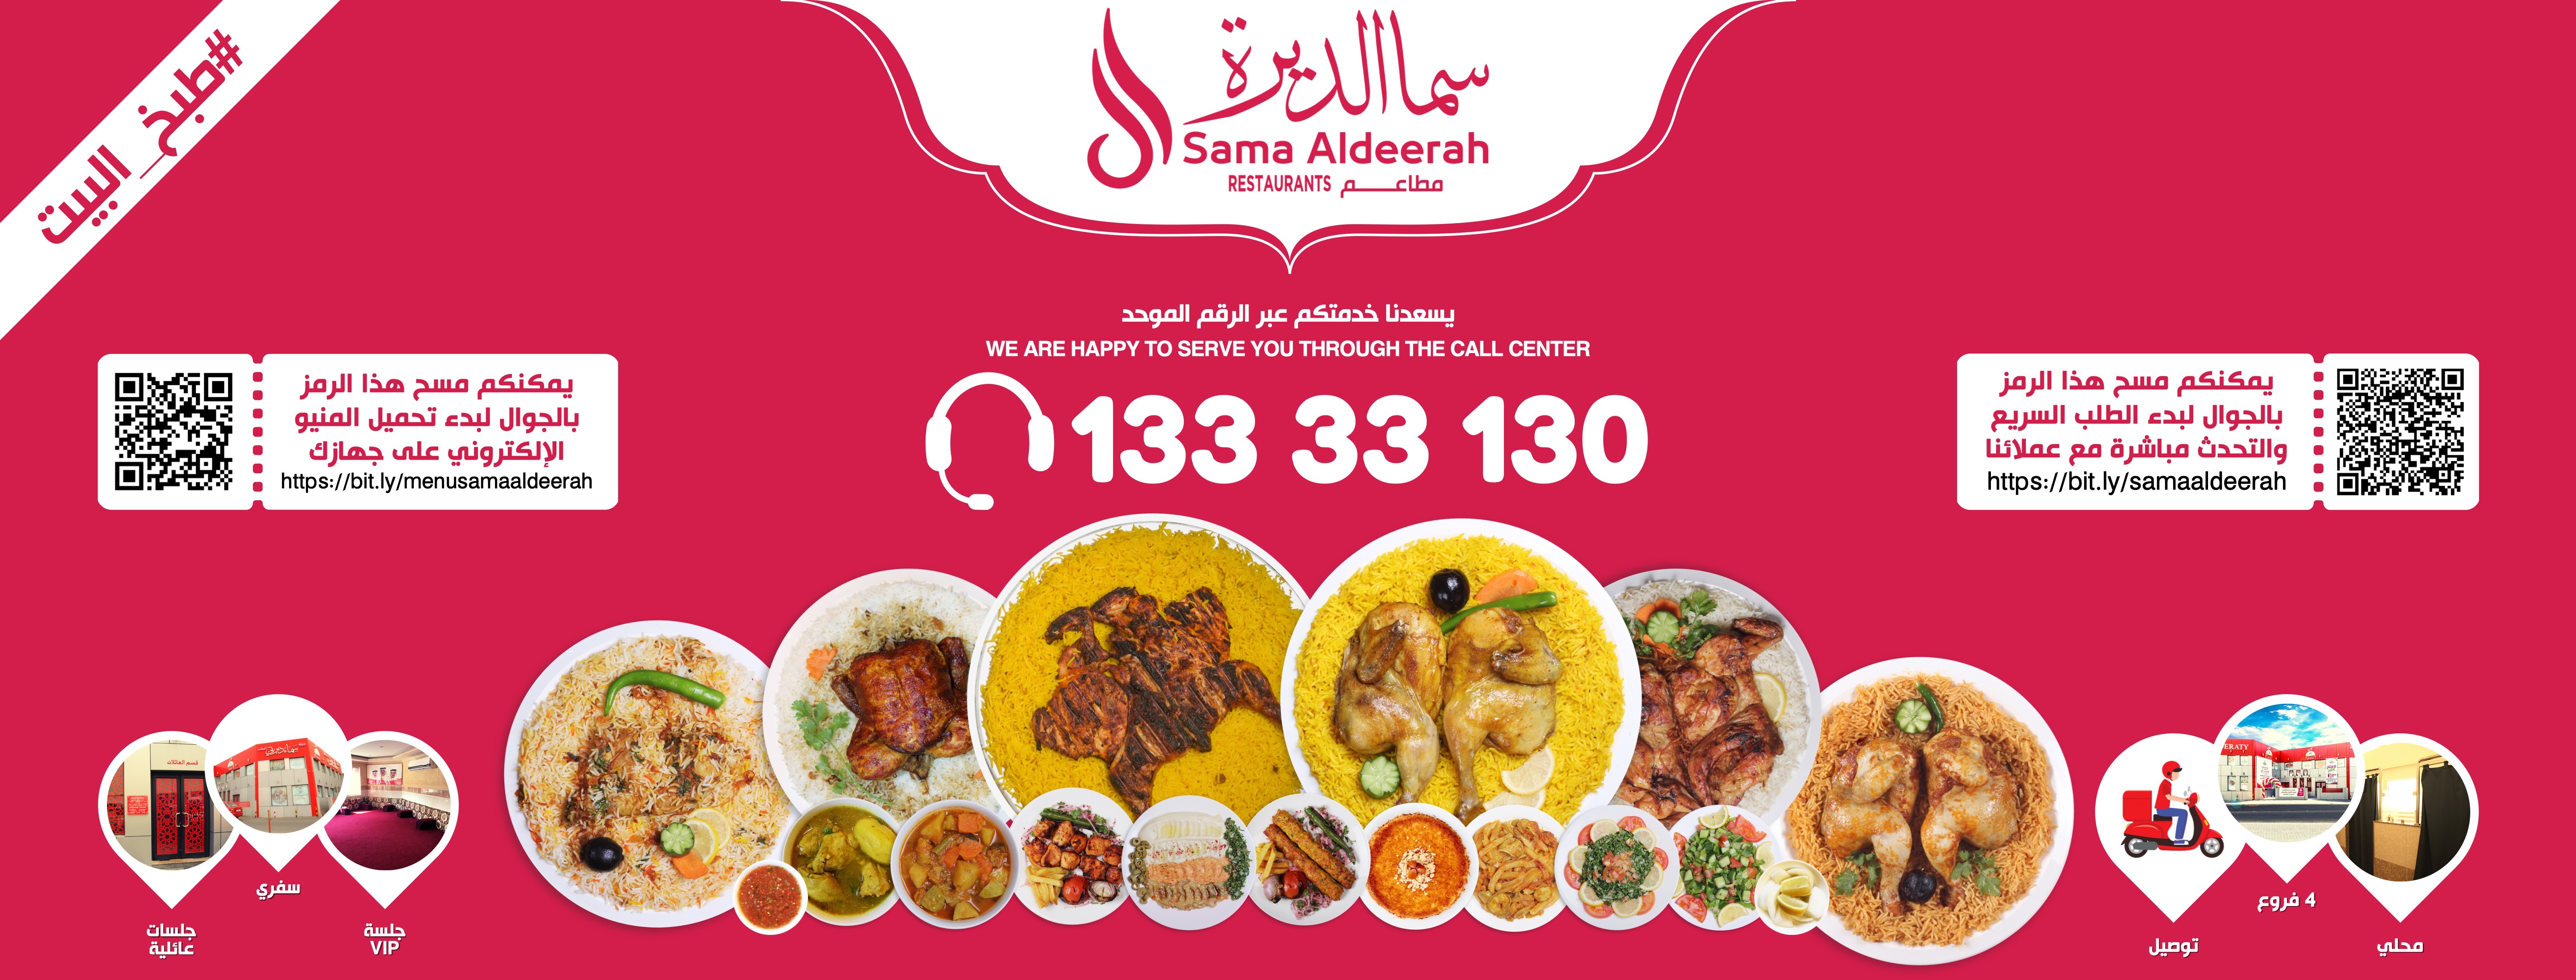 مطعم كوزي الرياض